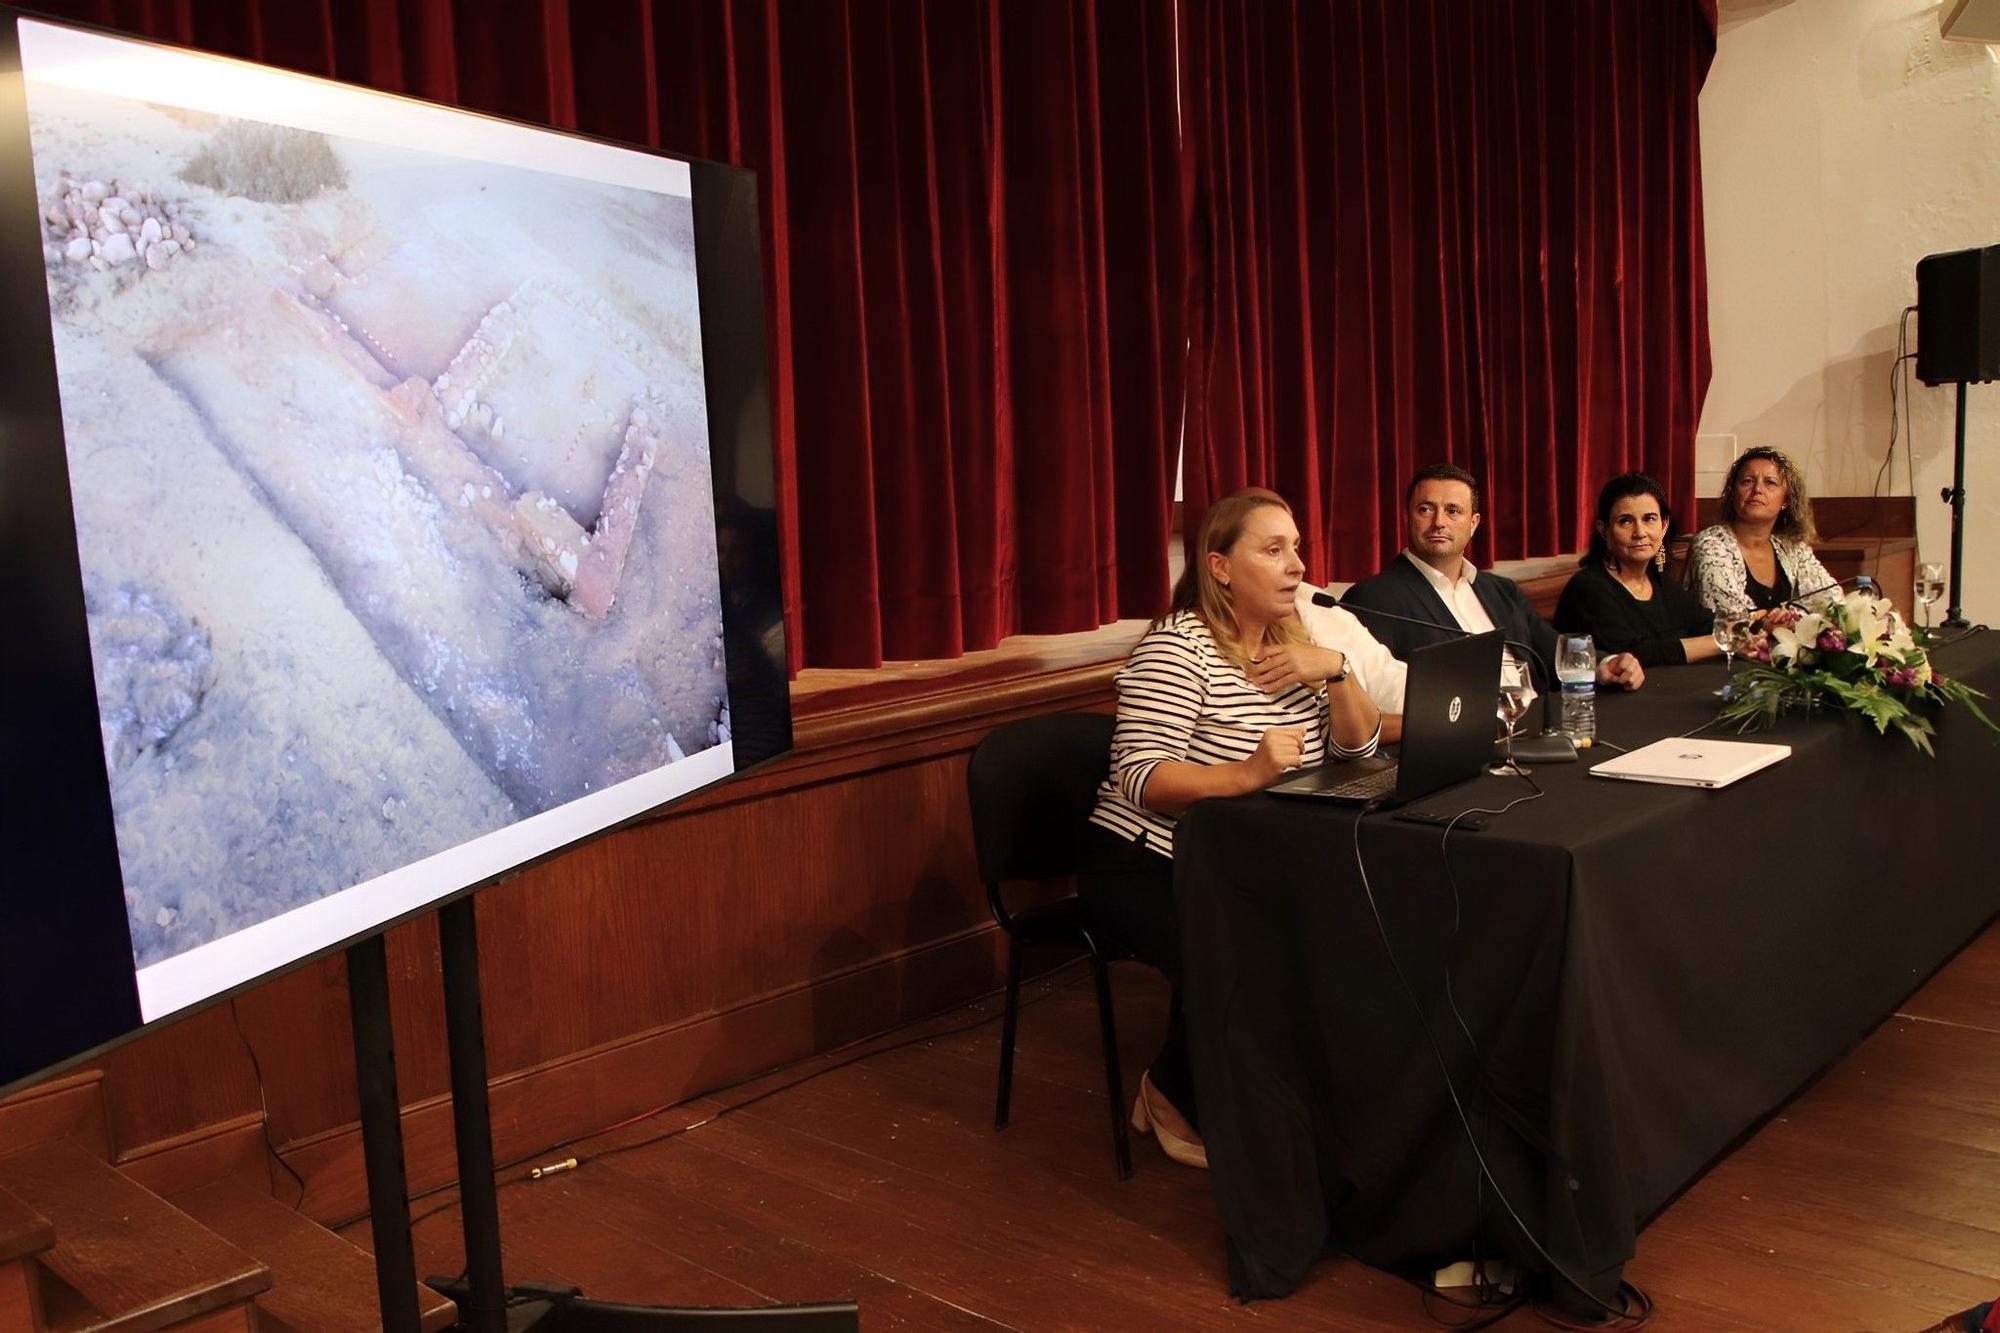 Charla divulgativa en Yaiza sobre las excavaciones en el yacimiento de San Marcial del Rubicón